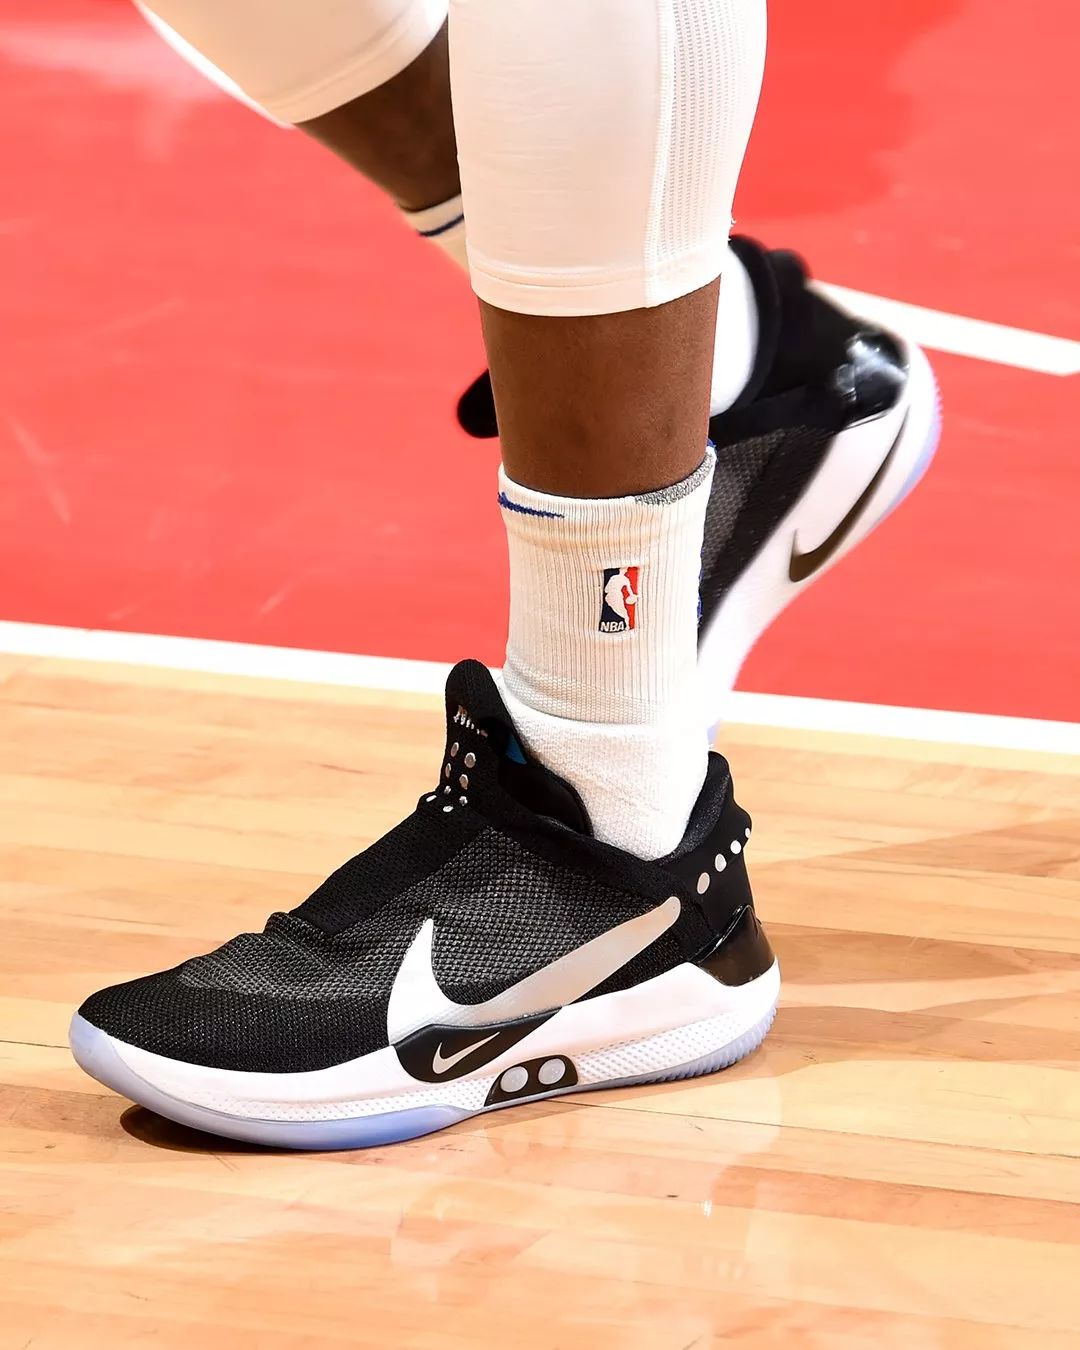 NBA賽場球鞋上腳集錦 未分類 第5張